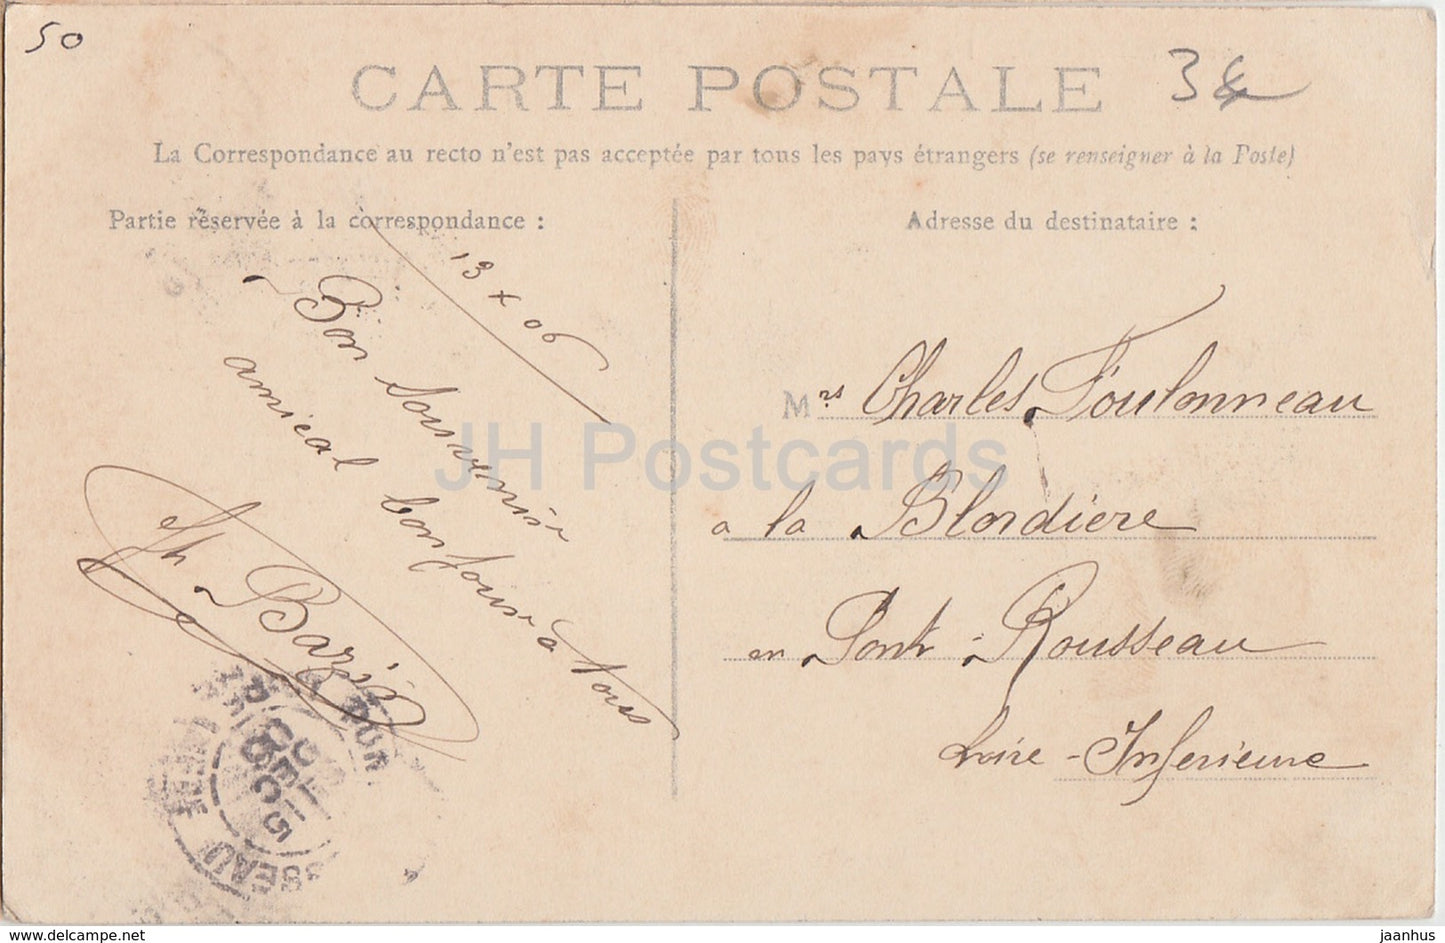 Le Chateau de Martinvast - Environs de Cherbourg - castle - 280 - old postcard - 1906 - France - used